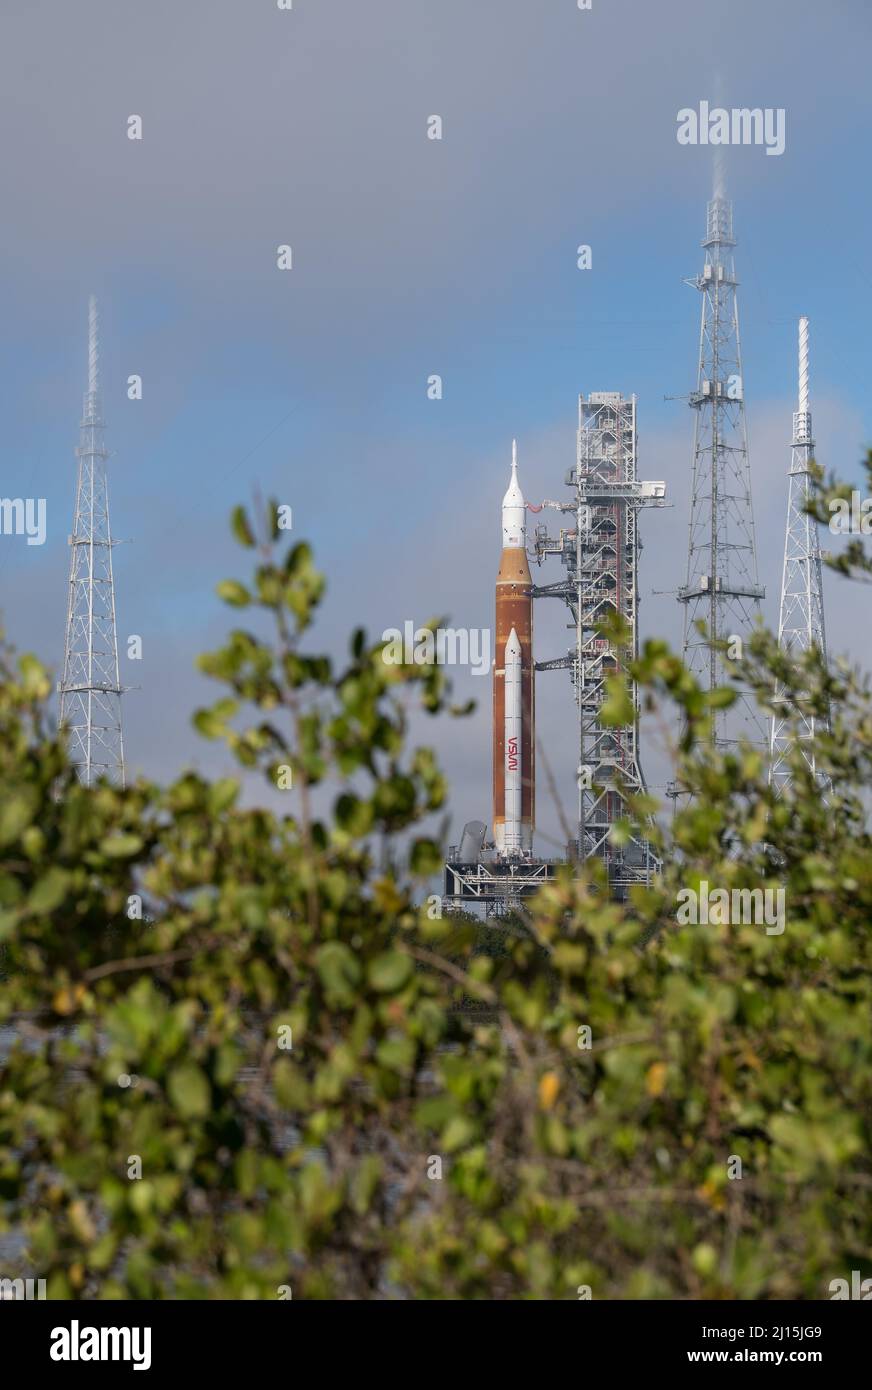 La fusée SLS (Space Launch System) de la NASA à bord de l'engin spatial Orion est vue au sommet d'un lanceur mobile au Launch Complex 39B, le vendredi 18 mars 2022, après avoir été déployée pour la première fois sur le plateau de lancement au Kennedy Space Center de la NASA en Floride. Avant l'essai en vol Artemis I de la NASA, la fusée SLS et l'engin spatial Orion entièrement empilés et intégrés feront l'objet d'une répétition en robe humide au Launch Complex 39B pour vérifier les systèmes et pratiquer les procédures de compte à rebours pour le premier lancement. Crédit photo : (NASA/Aubrey Gemignani) Banque D'Images